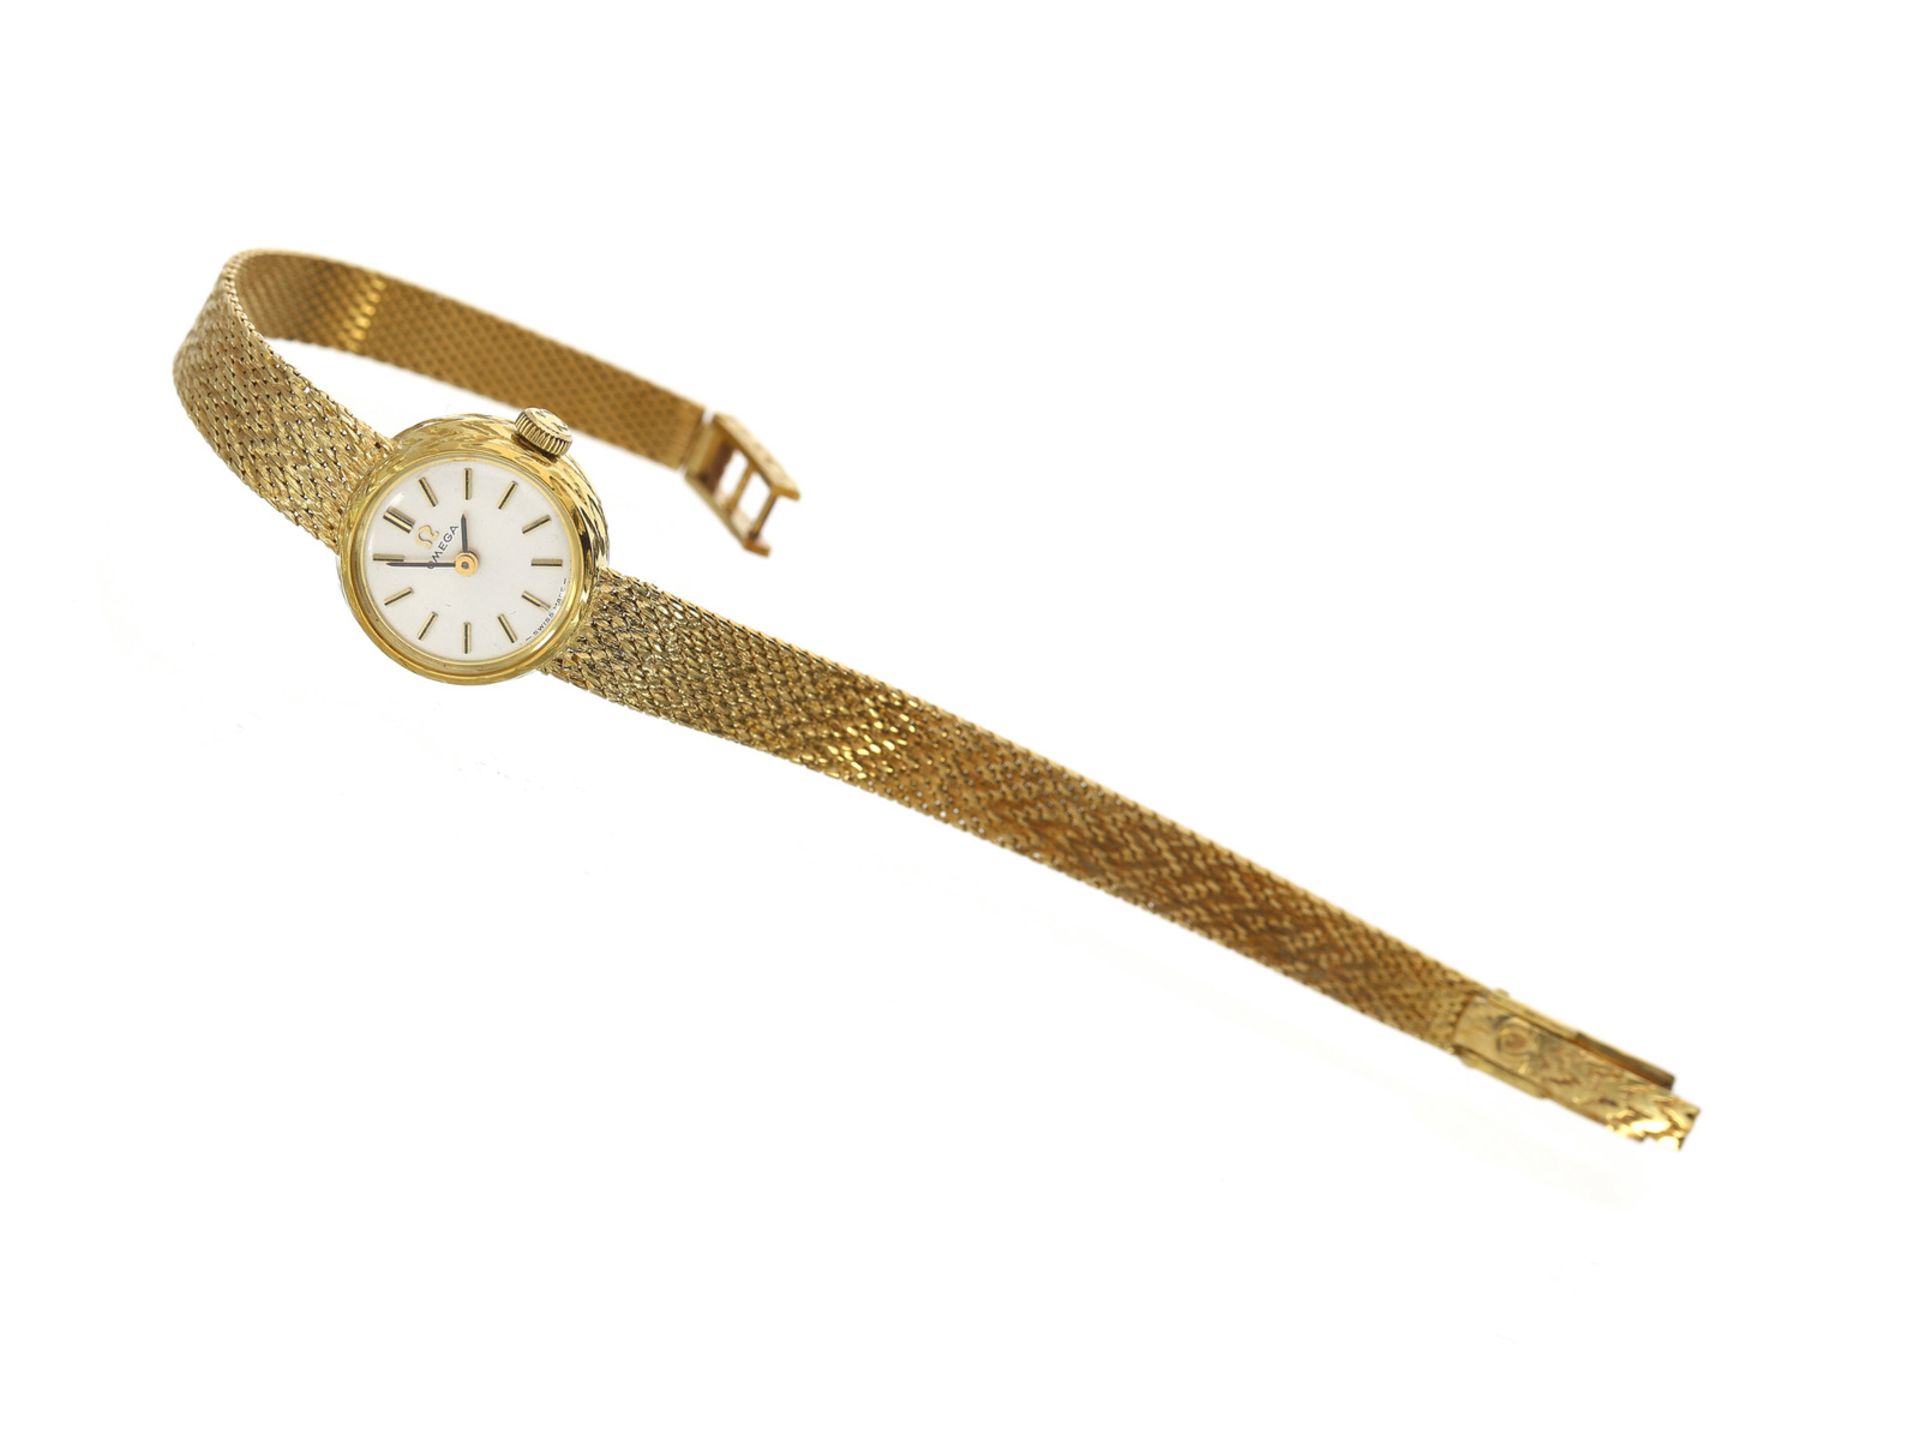 Armbanduhr: goldene vintage Damenuhr der Marke Omega, 14K GoldCa. 18cm lang, ca. 19,8g, 14K